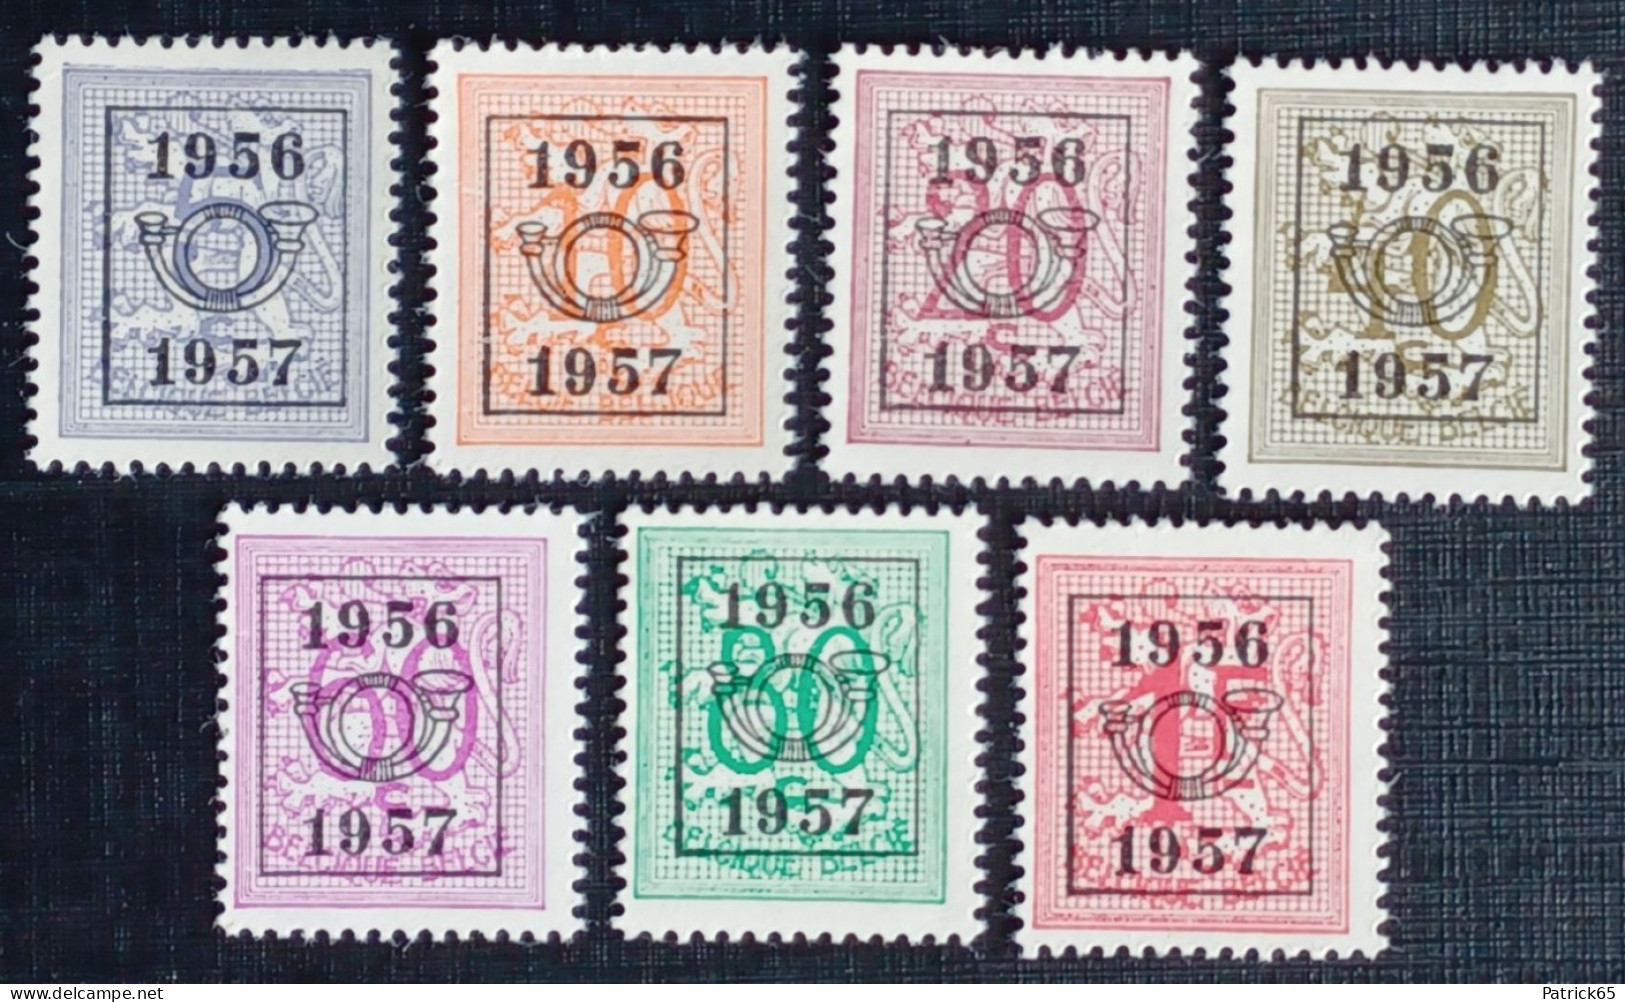 Belgie 1956/57 Obp.nrs.PRE 659/665 Cijfer Op Heraldieke Leeuw - Type E - Reeks 49 - Typografisch 1951-80 (Cijfer Op Leeuw)